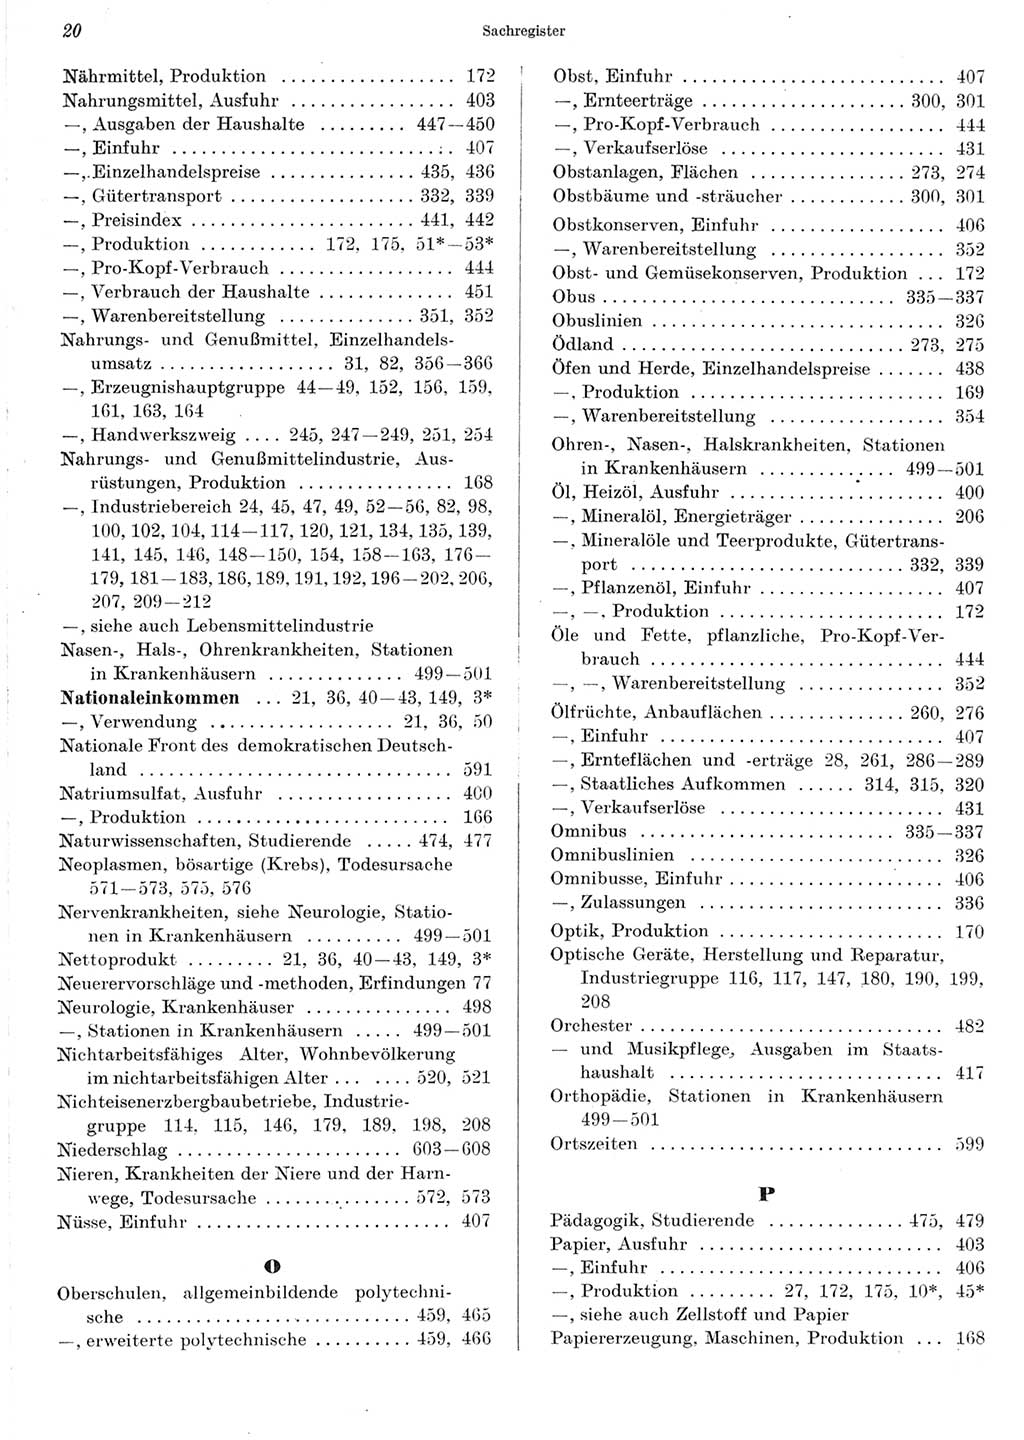 Statistisches Jahrbuch der Deutschen Demokratischen Republik (DDR) 1967, Seite 20 (Stat. Jb. DDR 1967, S. 20)